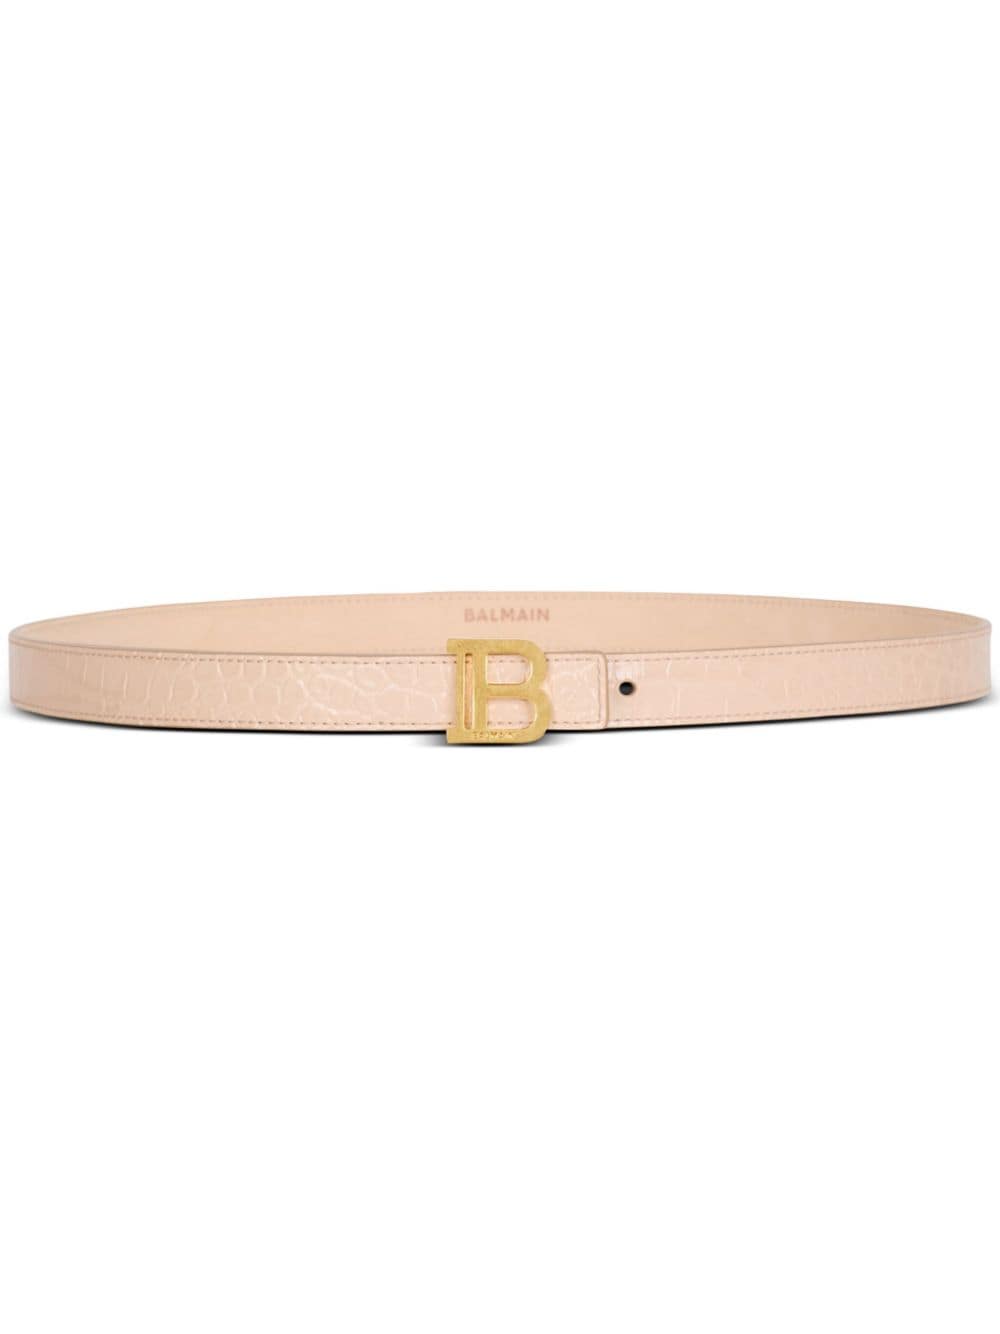 Balmain B-Belt crocodile-effect belt - Neutrals von Balmain